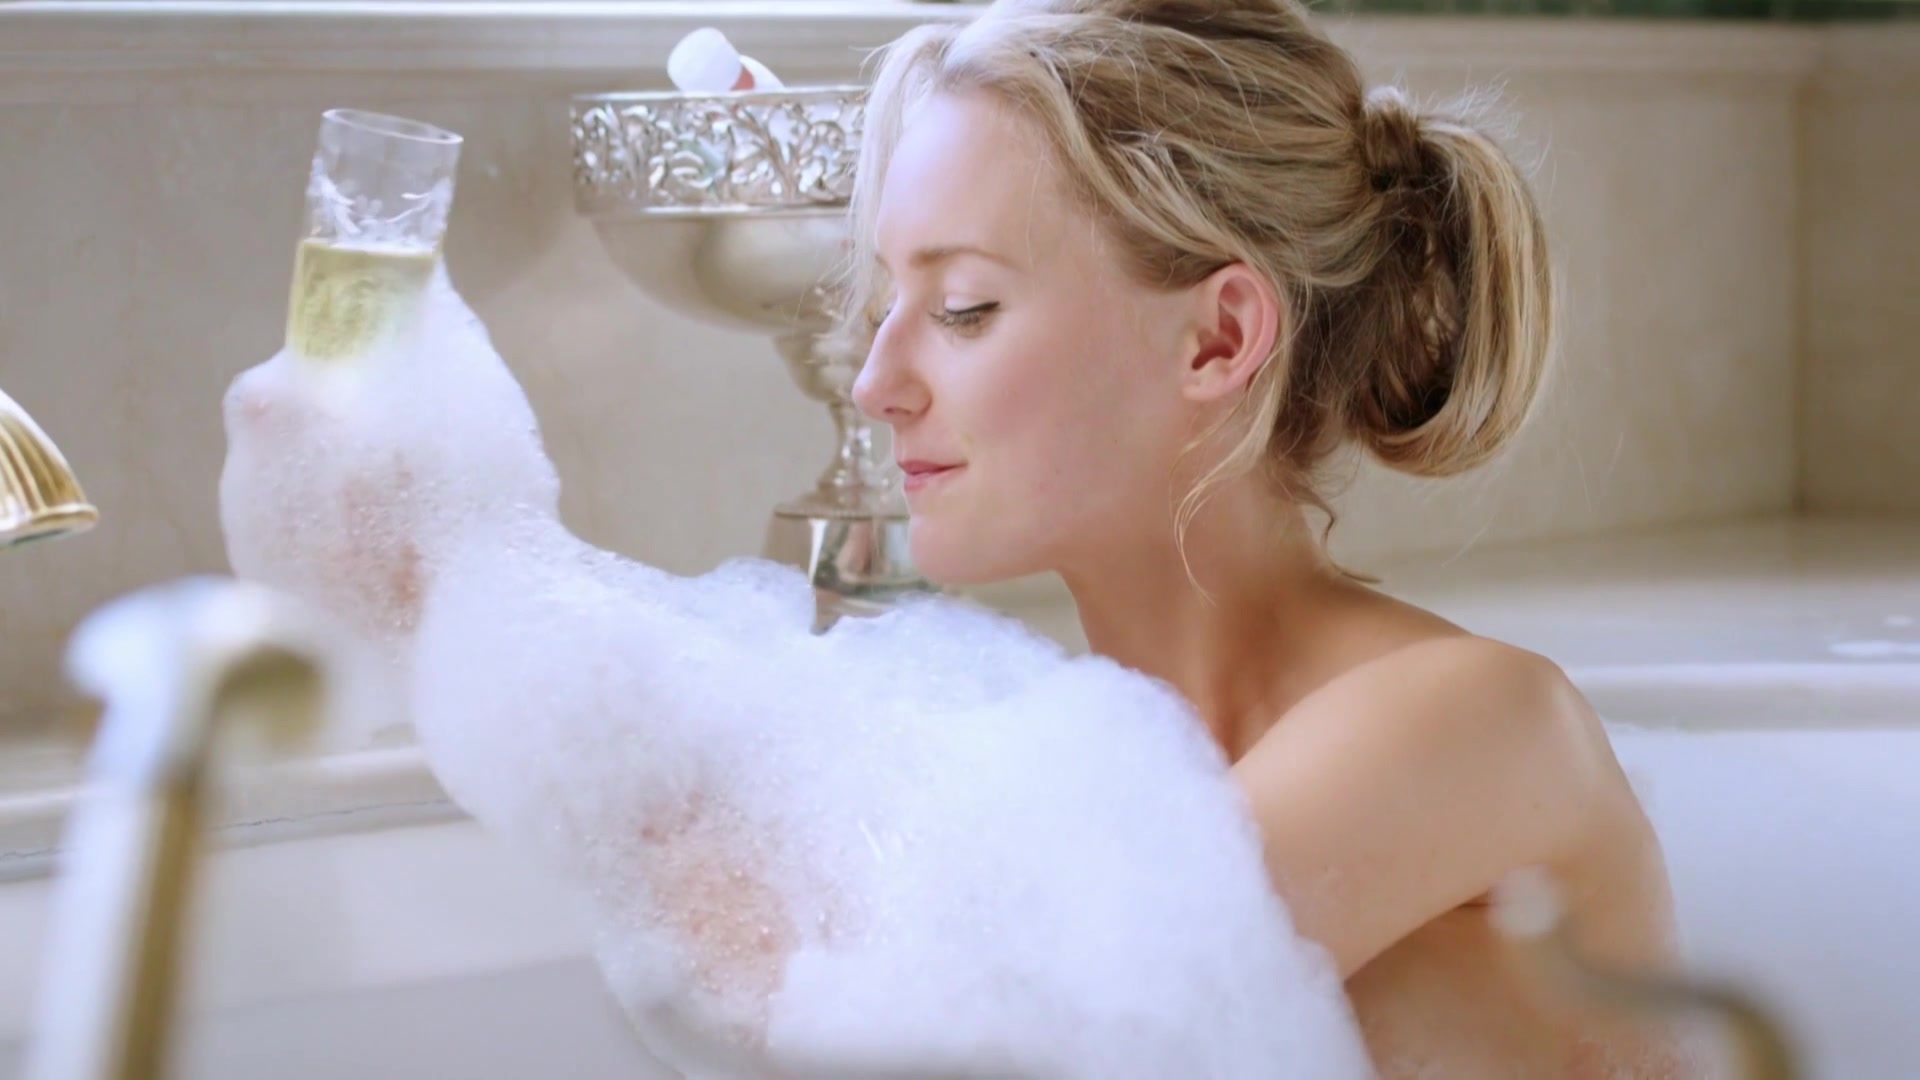 Sexy Tina Arning, Karli Rae Grogan nude - The Morning After (2015) TV show ...